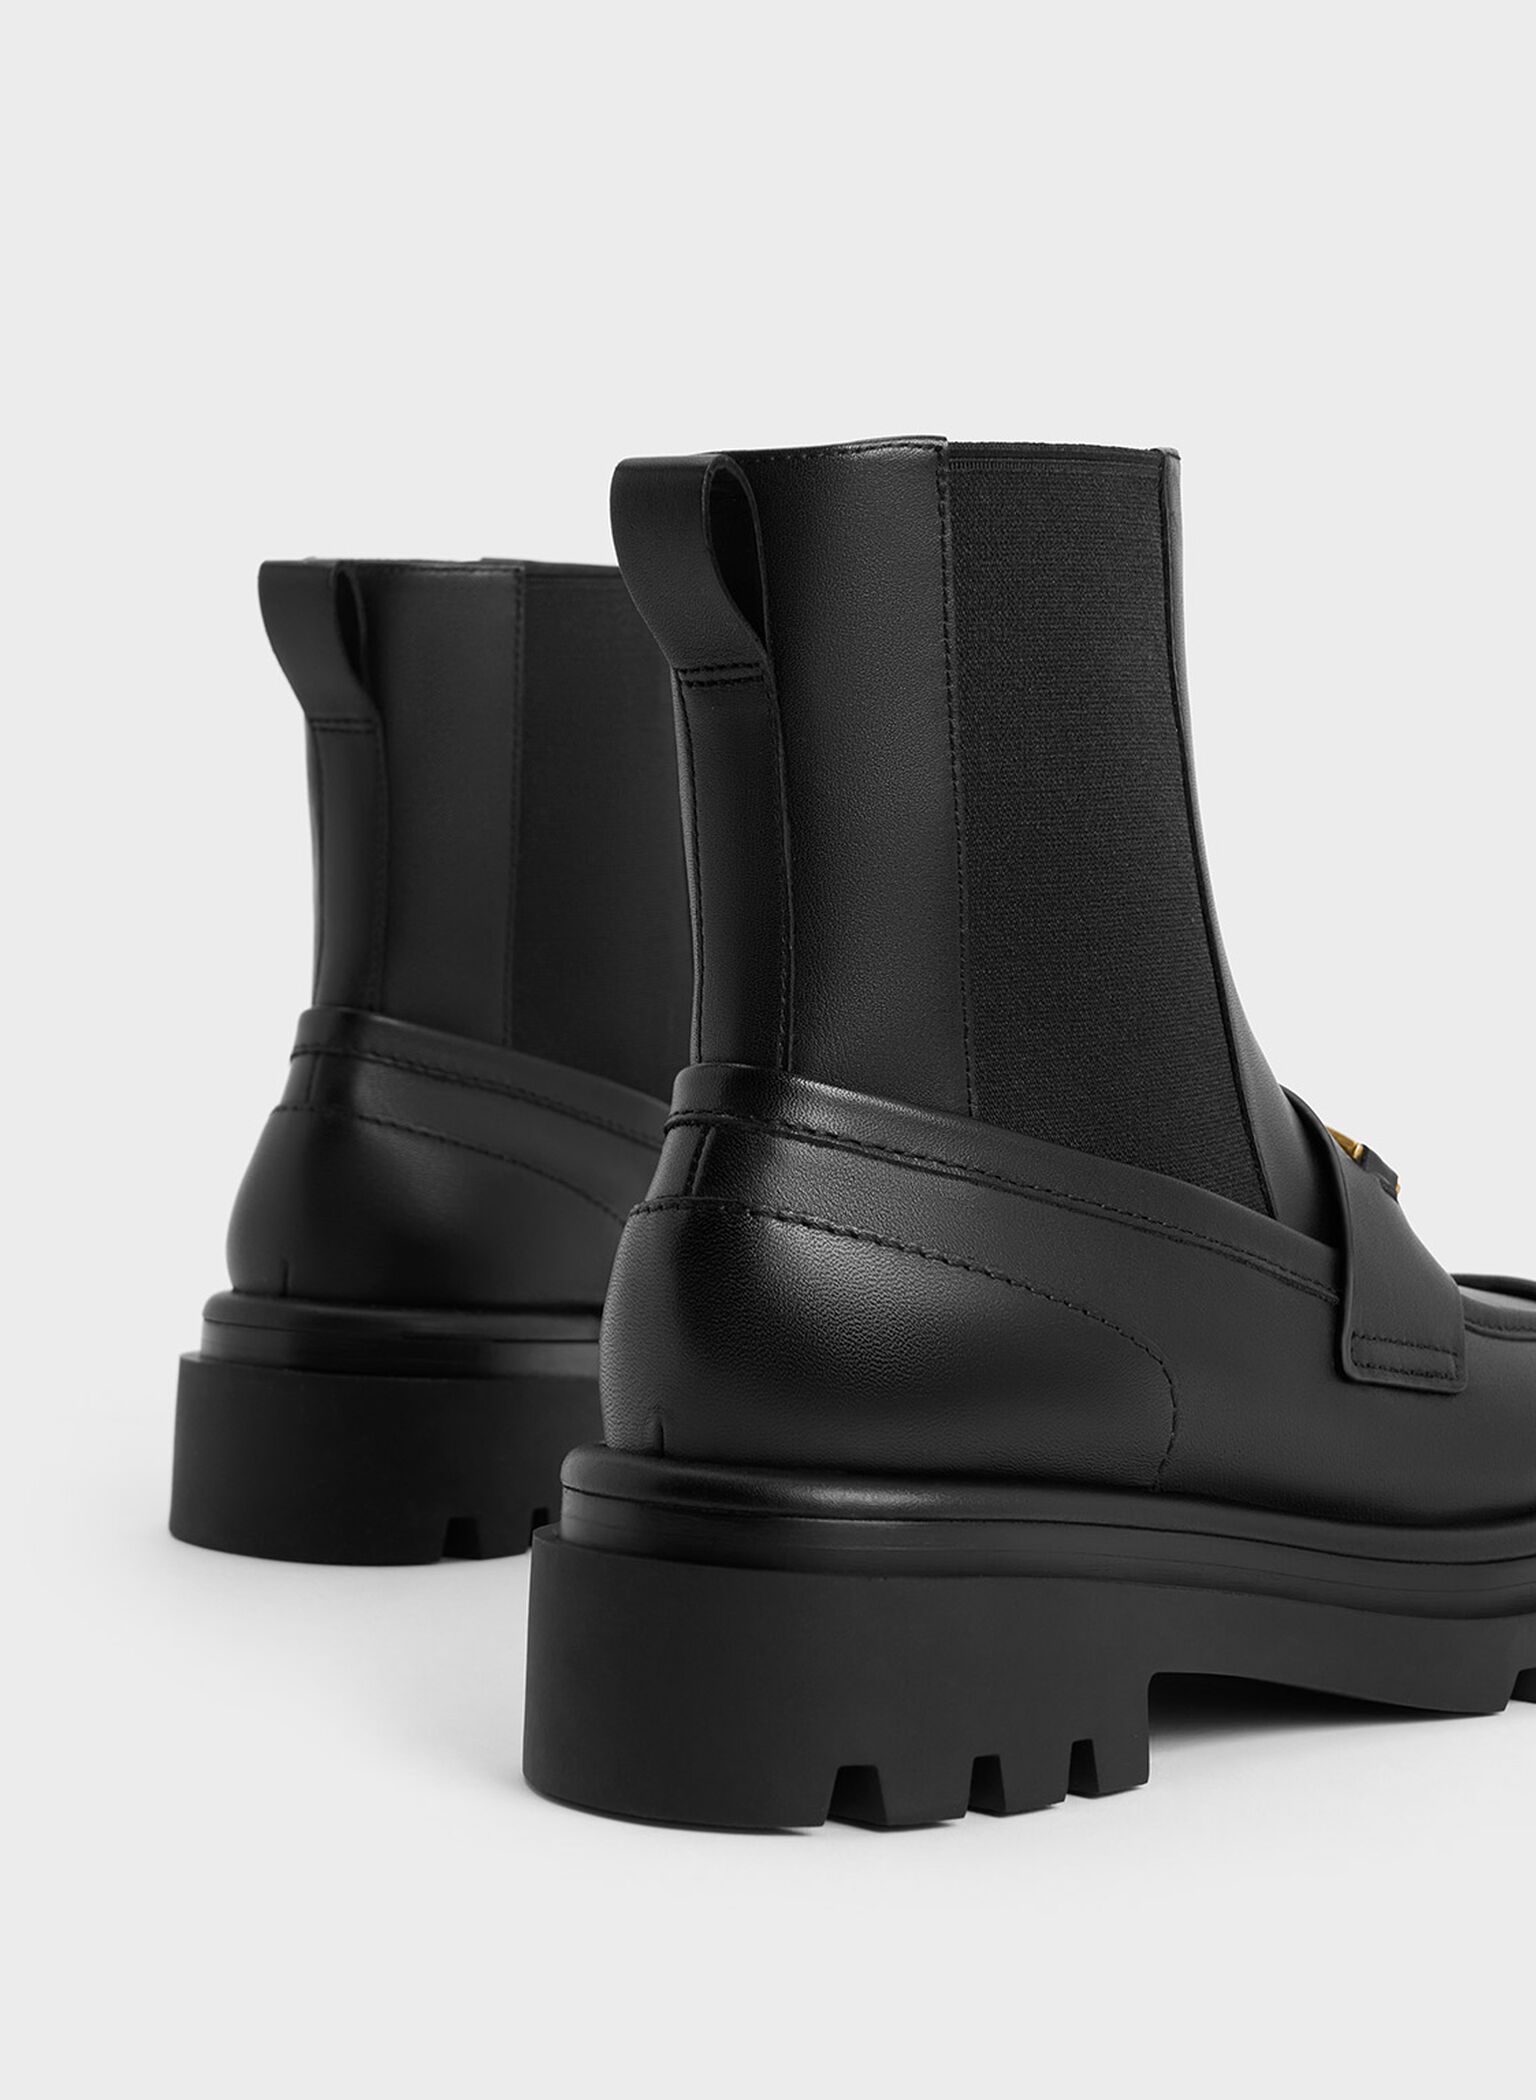 Gabine Leather Loafer Chelsea Boots, Black, hi-res